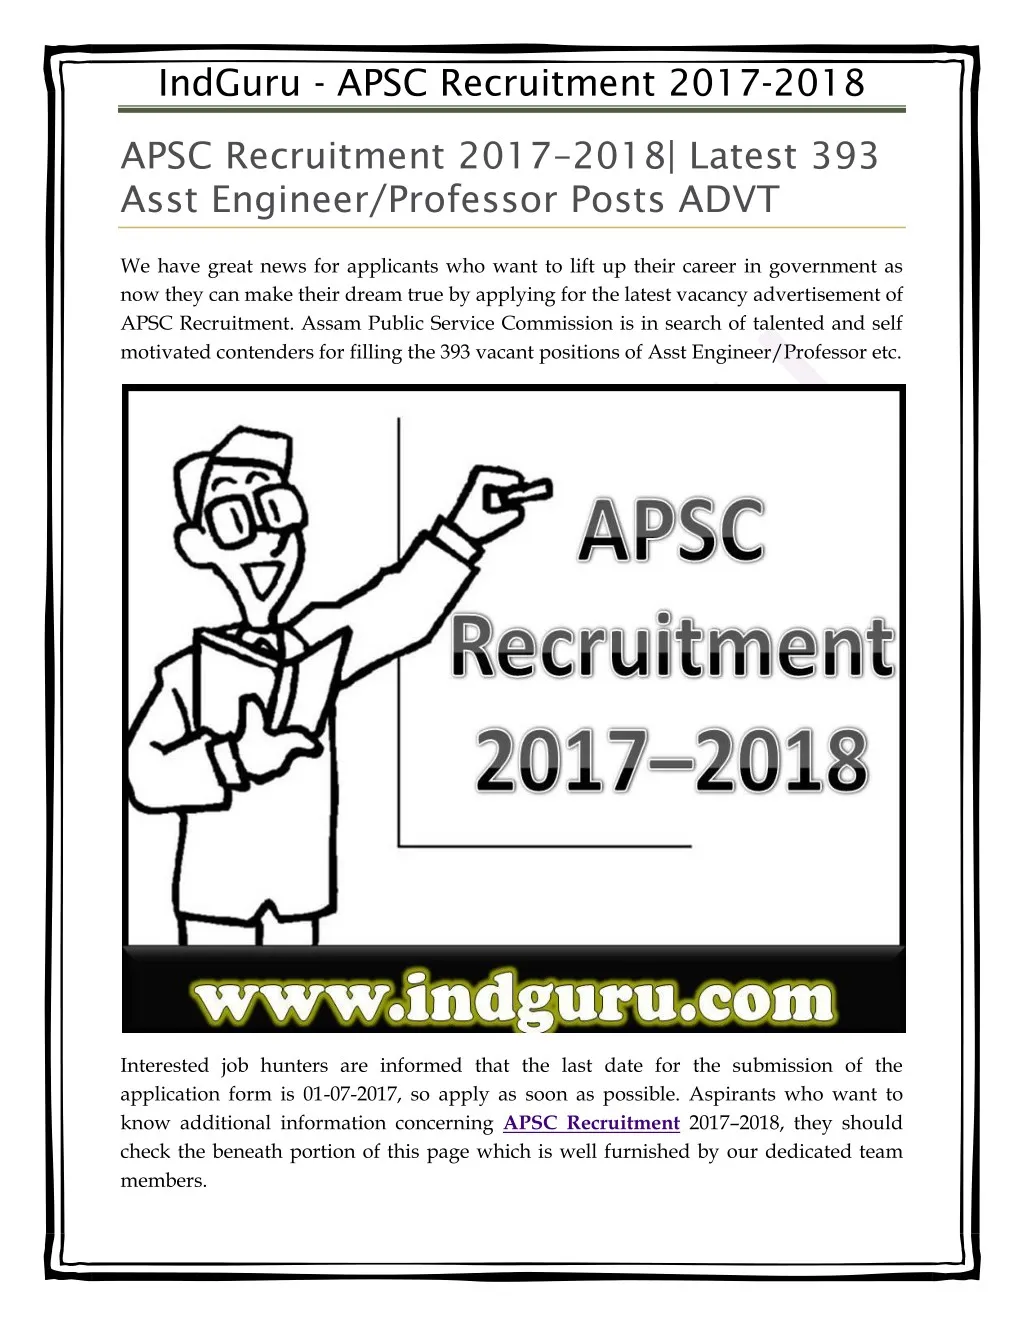 indguru apsc recruitment 2017 2018